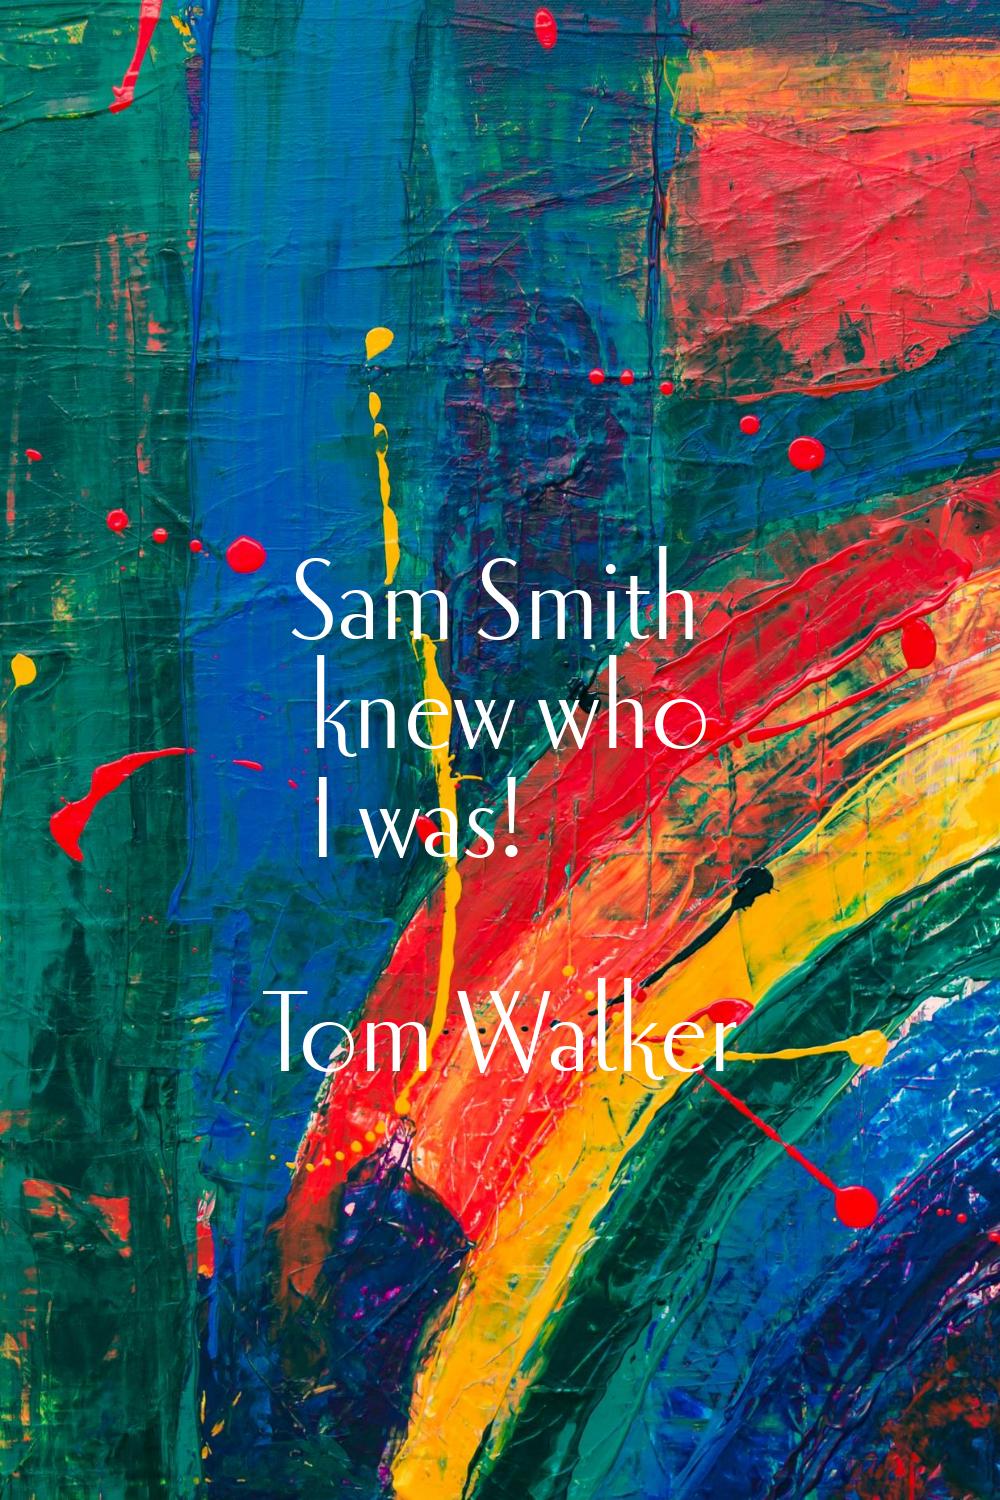 Sam Smith knew who I was!